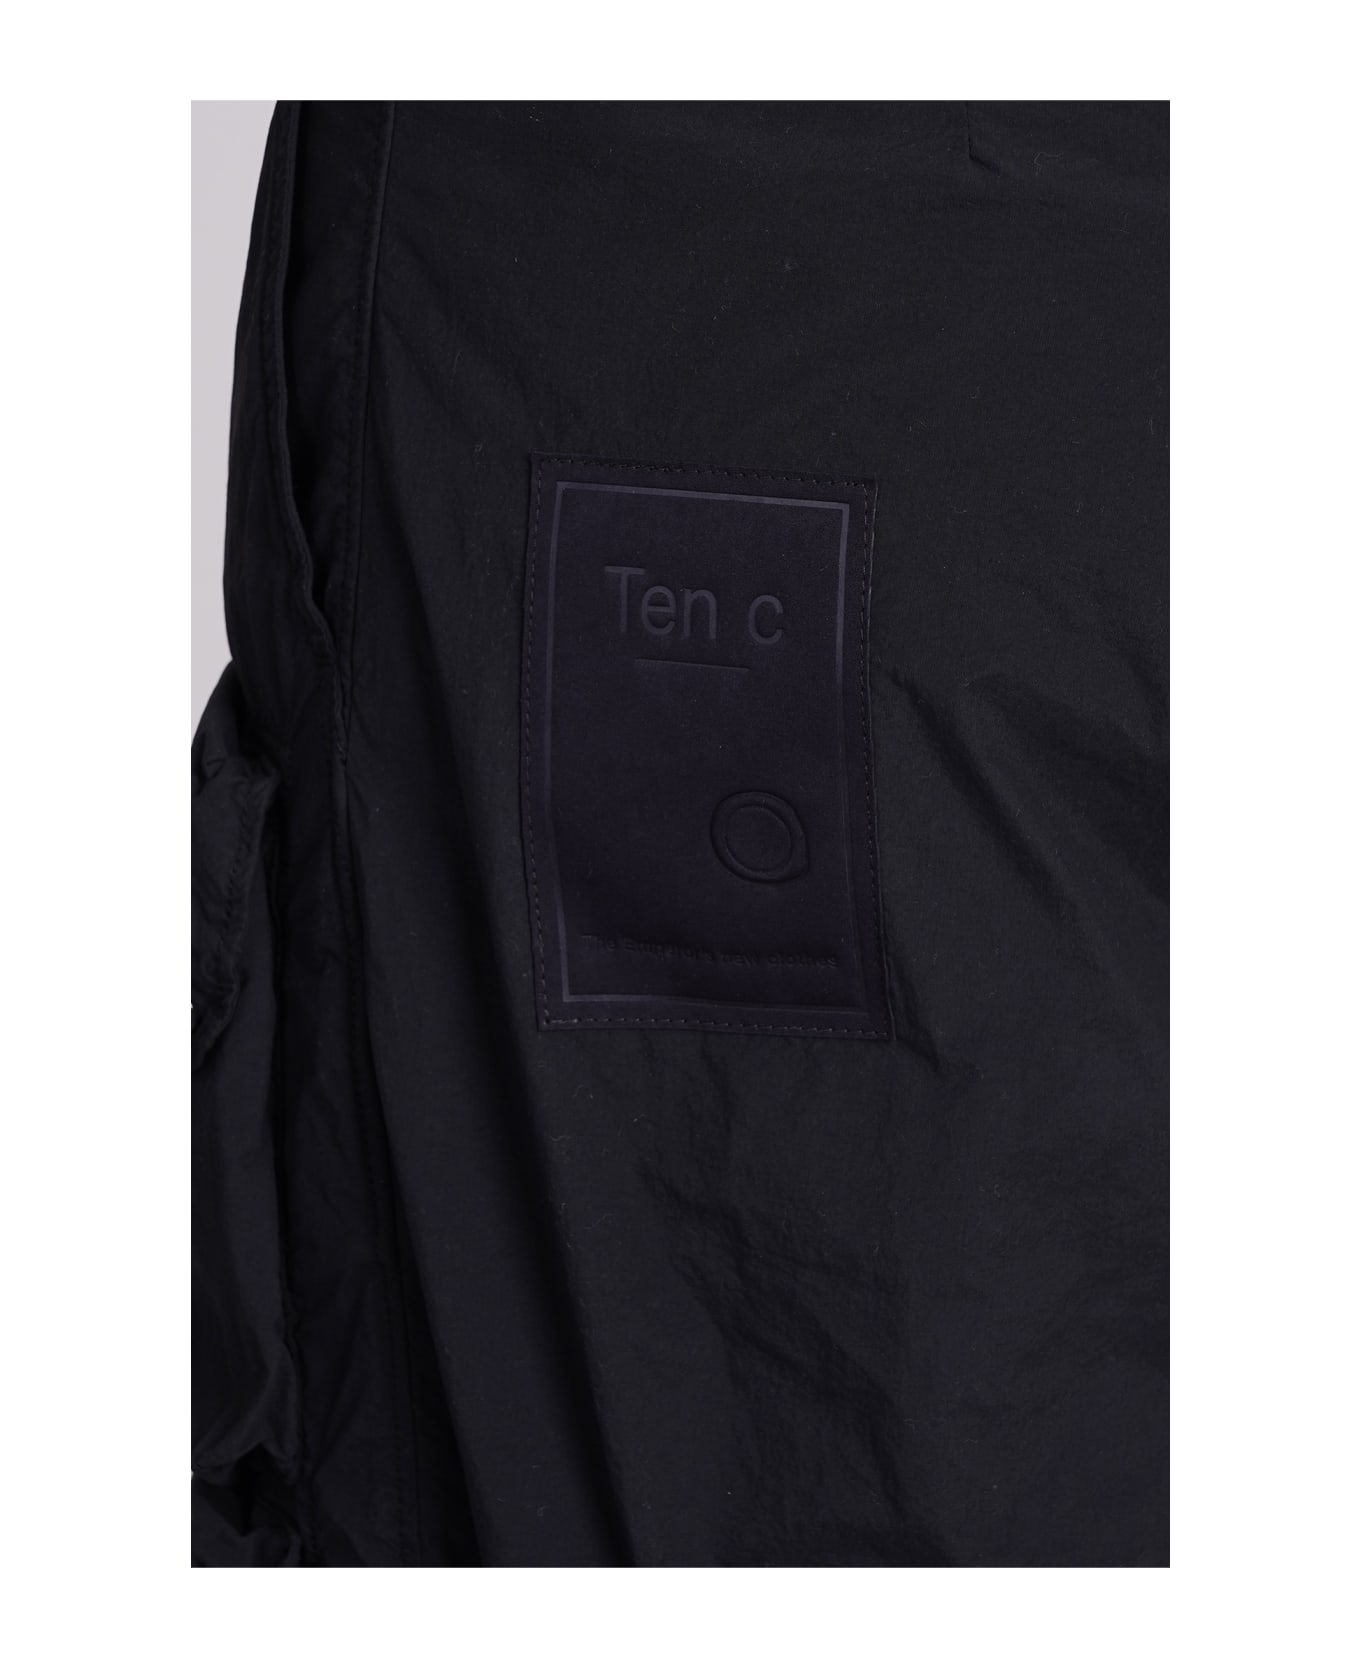 Ten C Pants In Black Polyamide - black ボトムス